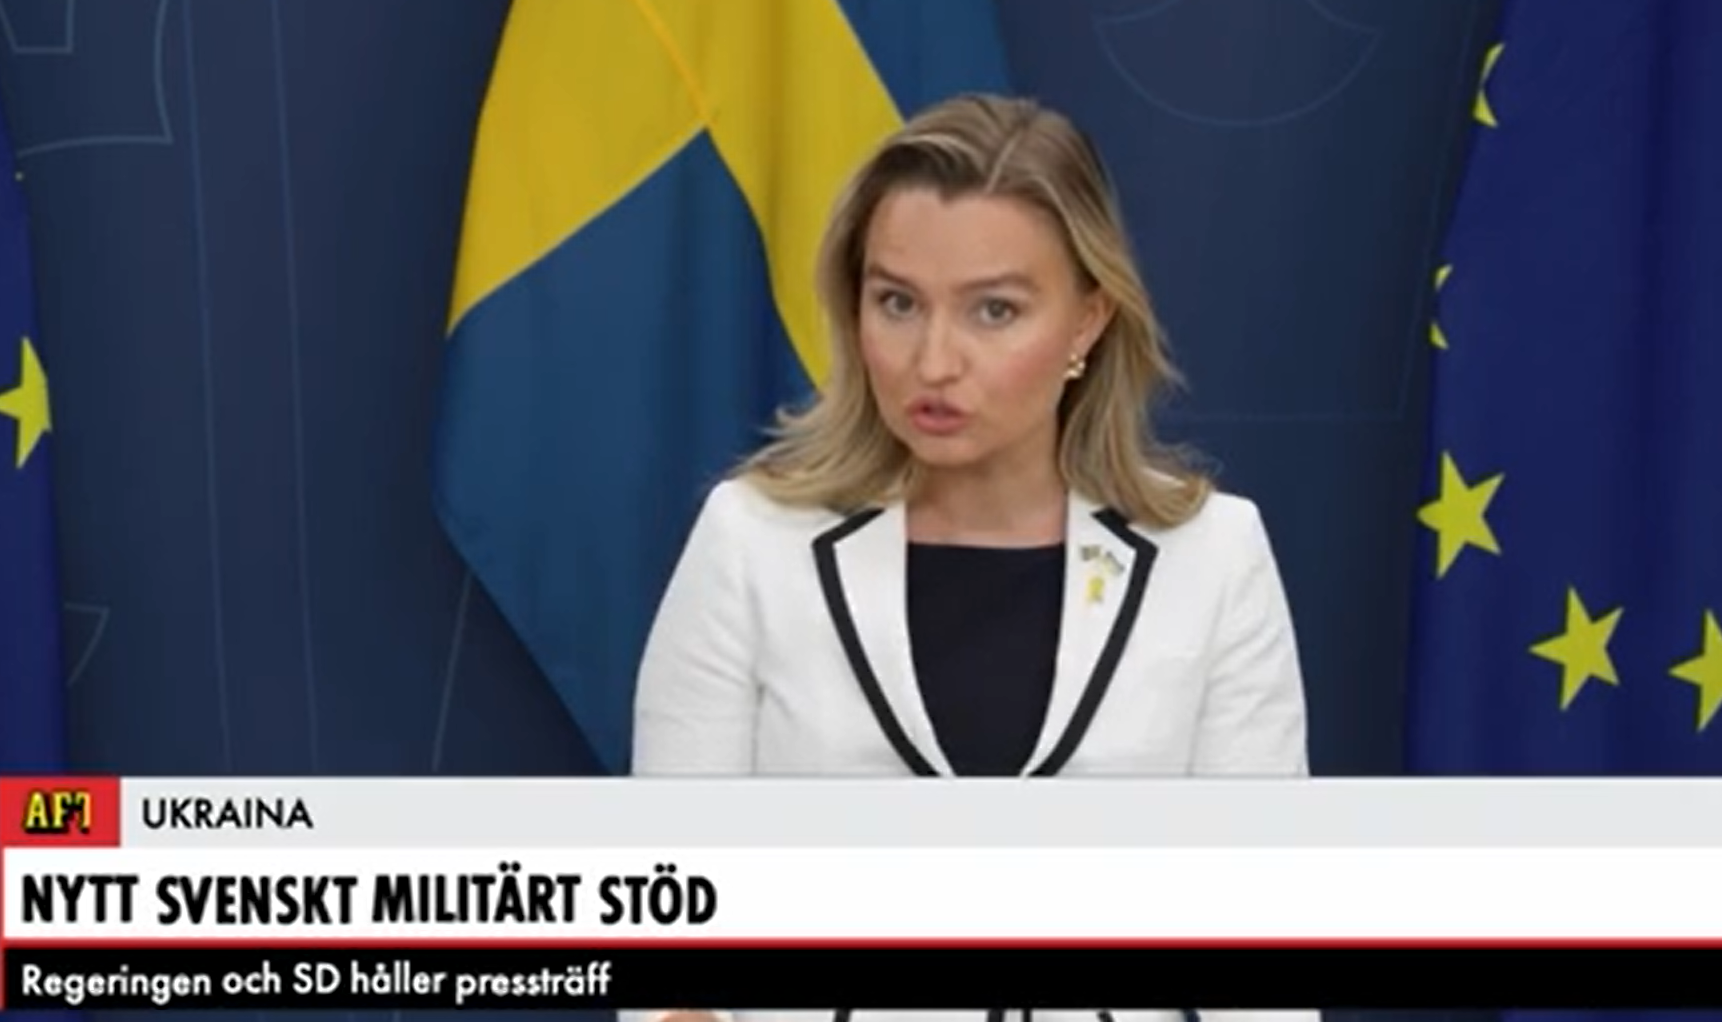 حزمة دعم عسكري جديدة لأوكرانيا بقيمة 13 مليار كرونة من السويد